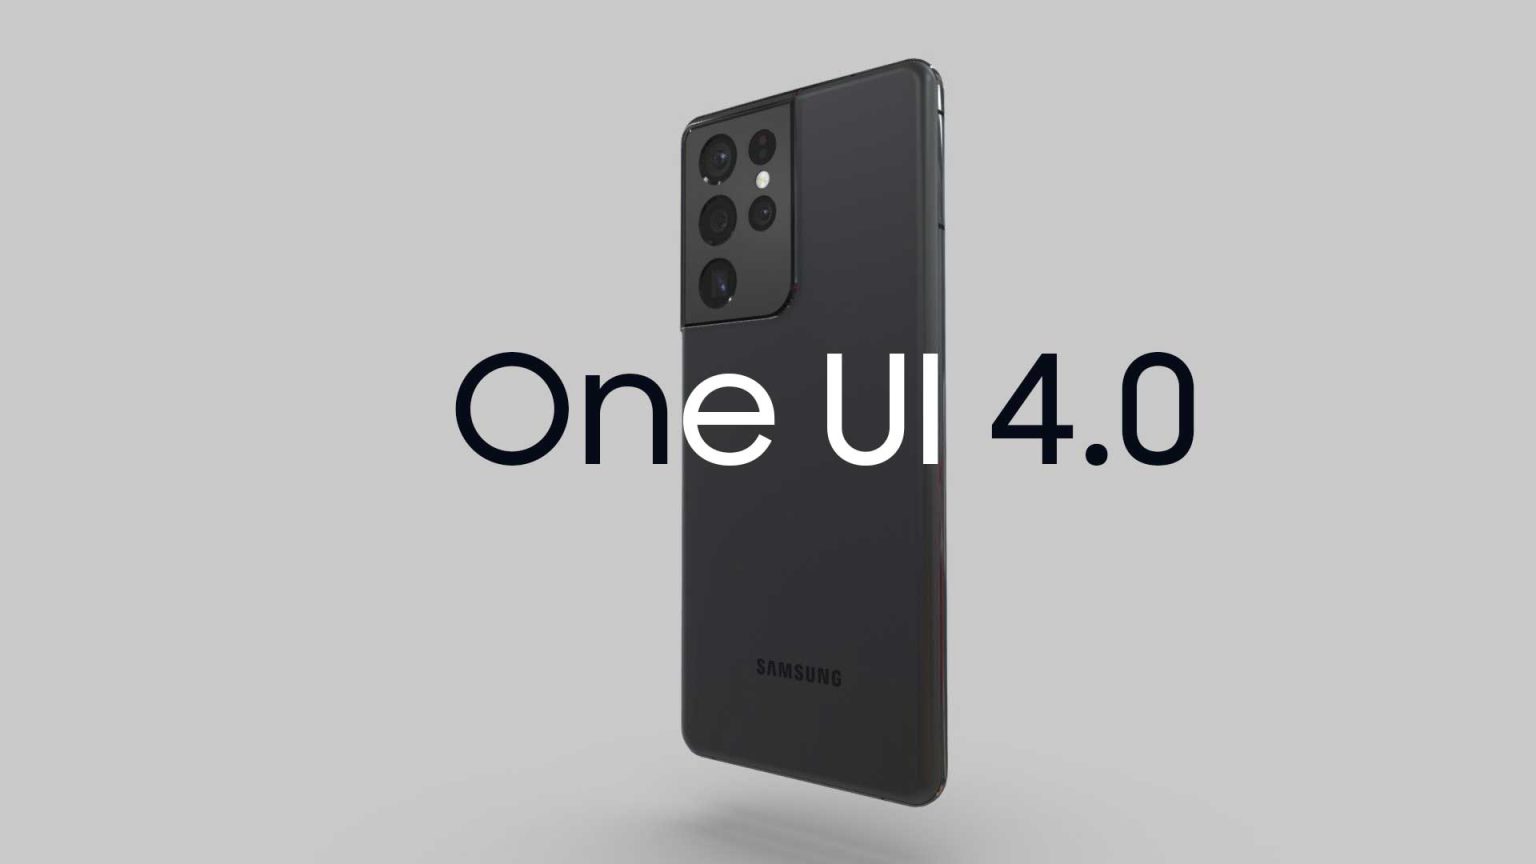 Los foros correspondientes a One UI 4.0 comienzan a verse en USA. El Samsung Galaxy S21 y sus variantes serán los primeros en usarlo.